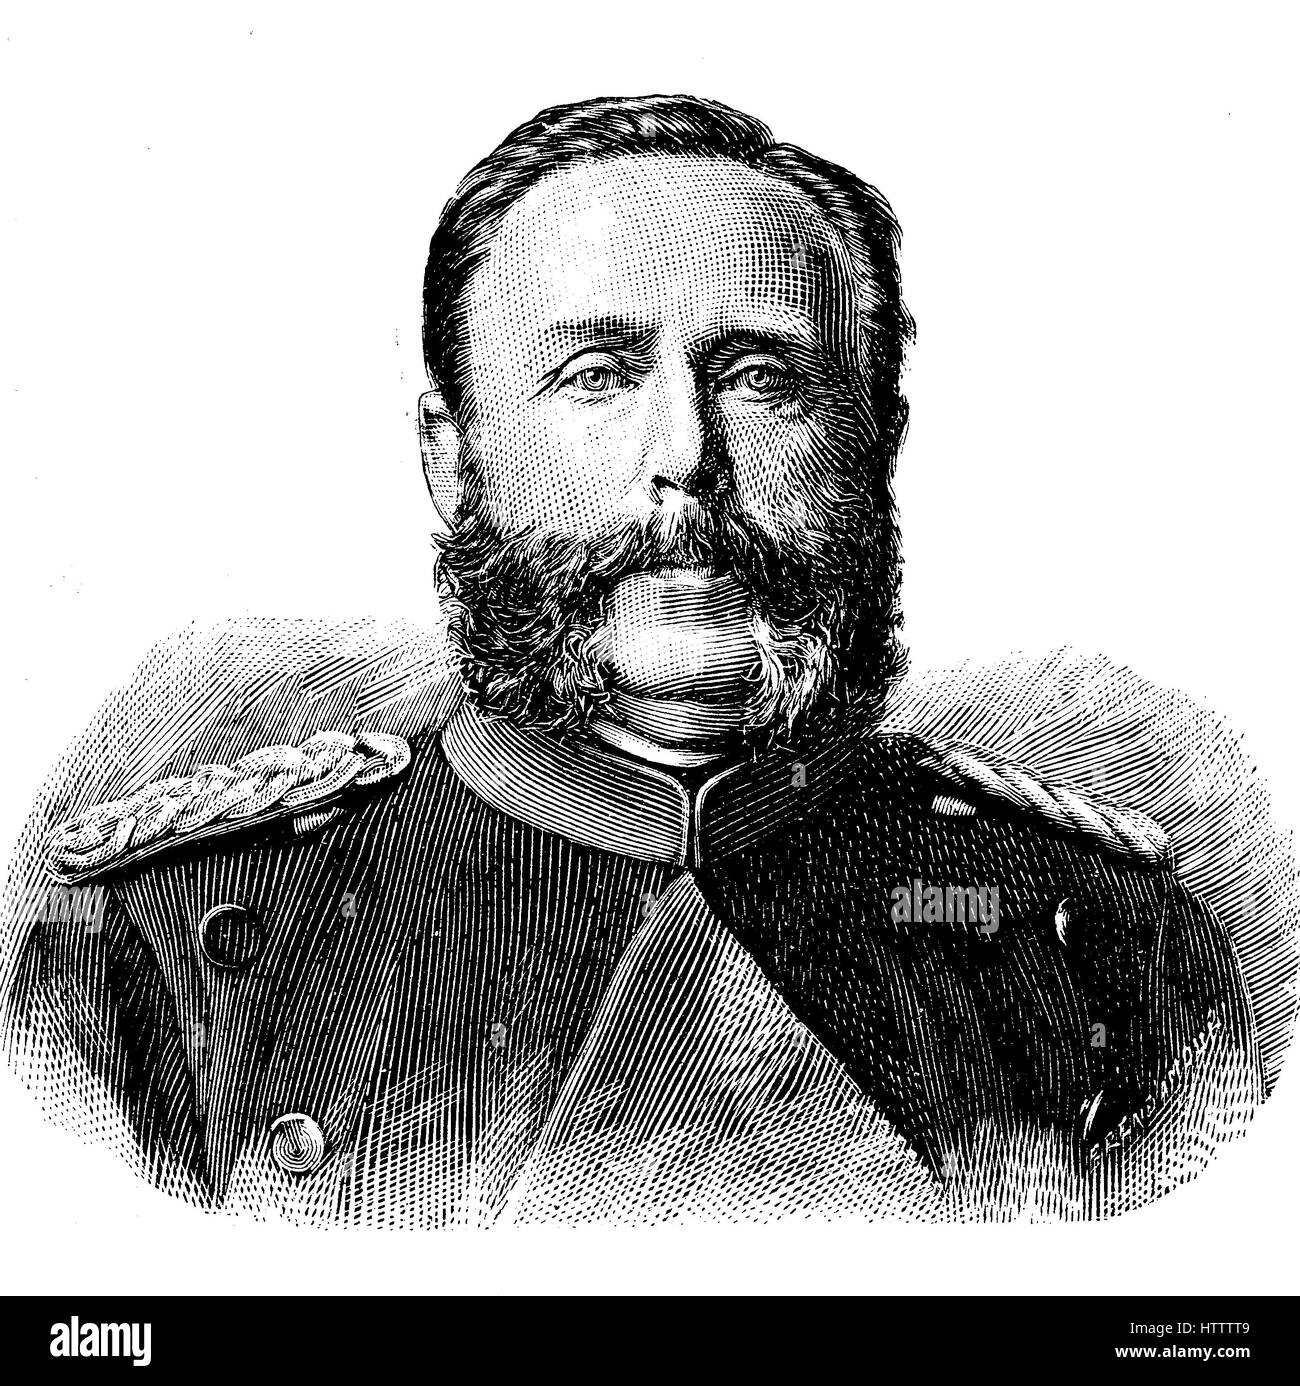 Les militaires de l'Allemagne à la guerre franco-prussienne de 1870 - 1871, chirurgien en chef von Beck MD, l'Allemagne, la reproduction d'une gravure sur bois à partir de 1882, l'amélioration numérique Banque D'Images